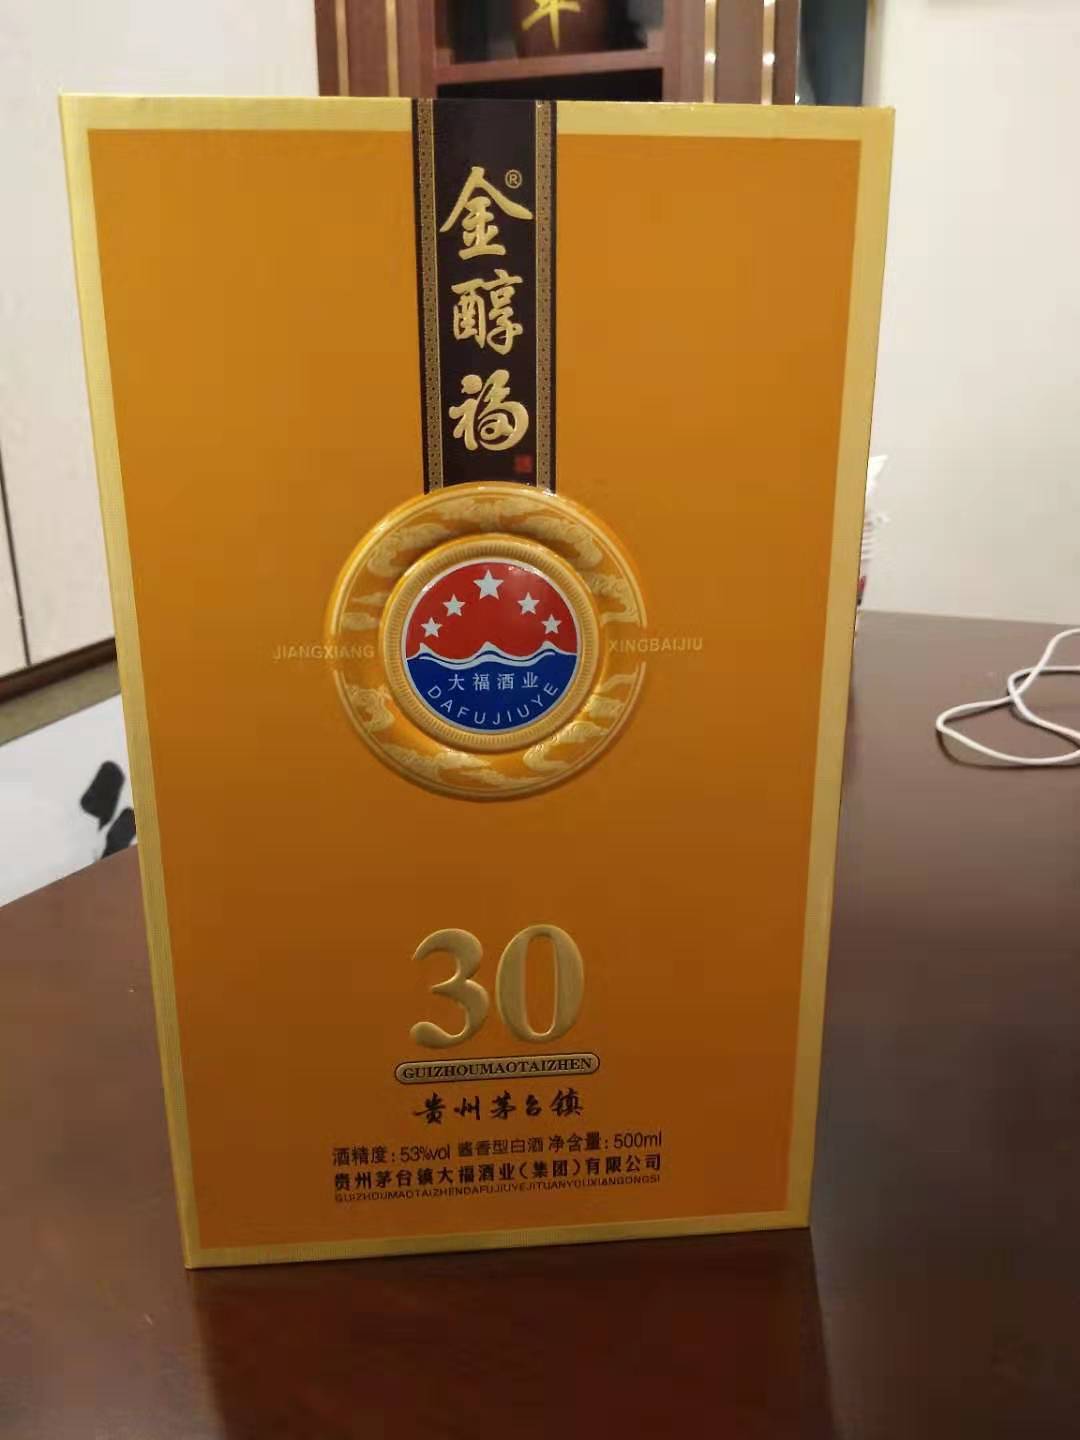 大福酒業金醇福30年窖藏酒黃色